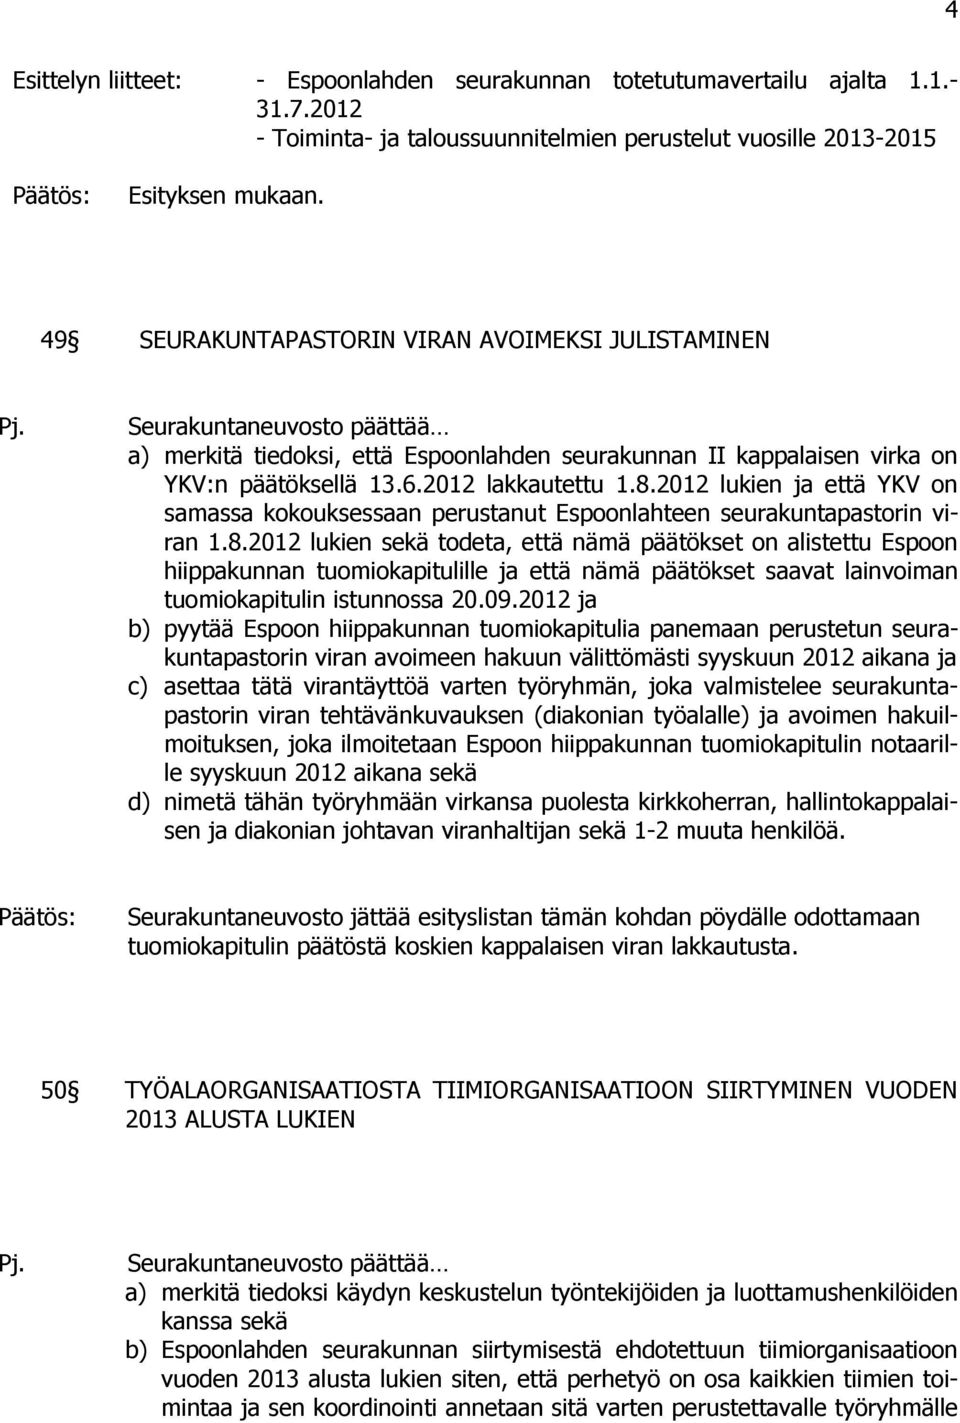 8.2012 lukien ja että YKV on samassa kokouksessaan perustanut Espoonlahteen seurakuntapastorin viran 1.8.2012 lukien sekä todeta, että nämä päätökset on alistettu Espoon hiippakunnan tuomiokapitulille ja että nämä päätökset saavat lainvoiman tuomiokapitulin istunnossa 20.